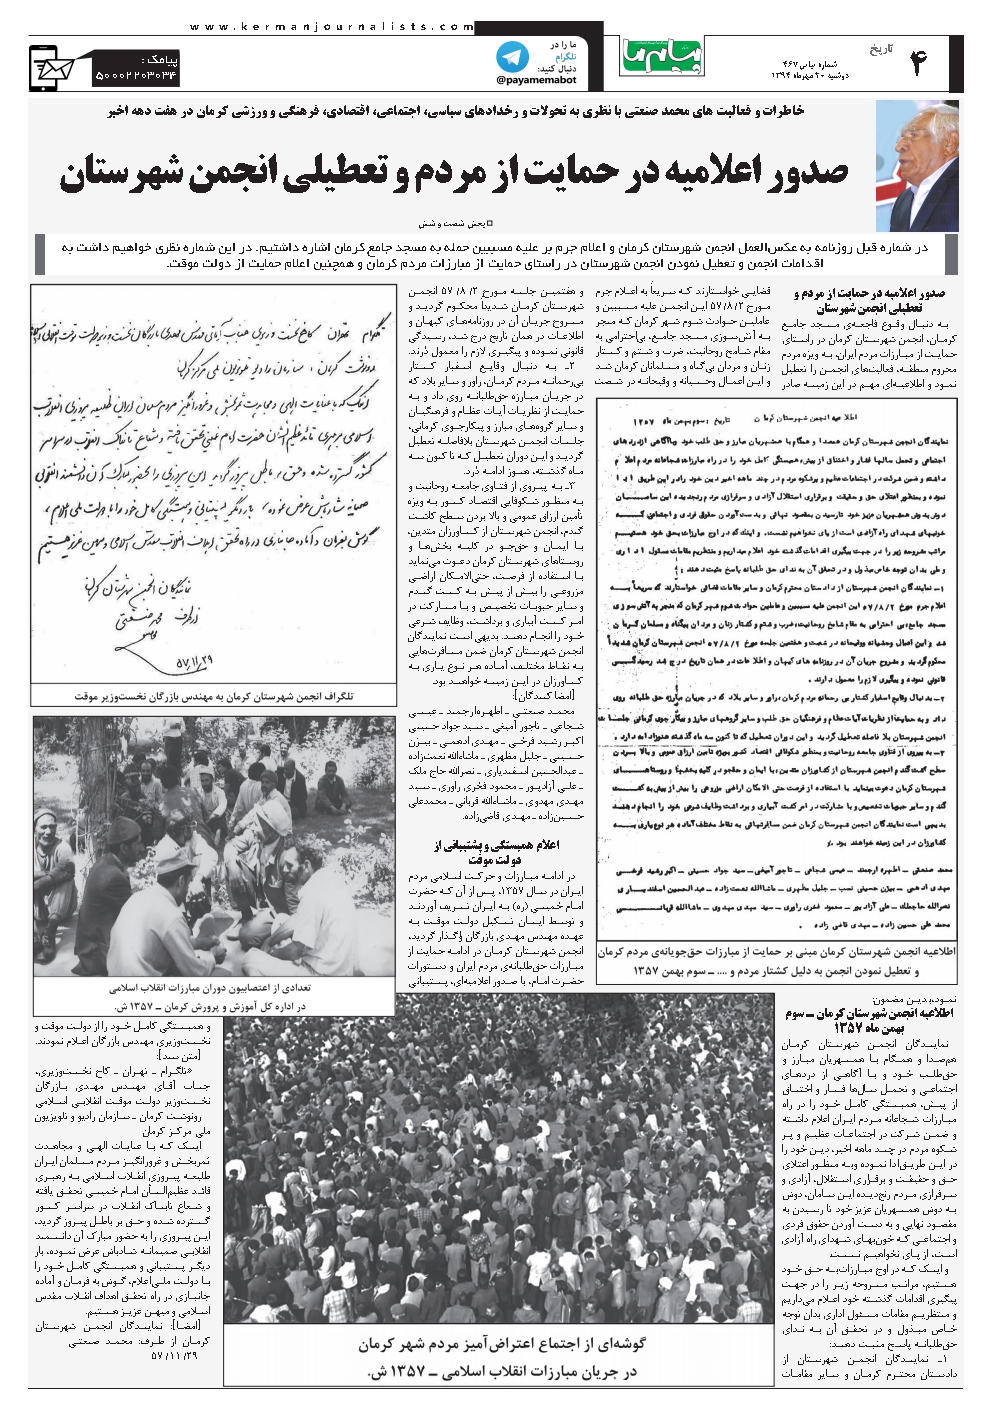 صفحه تاریخ شماره شماره ۴۶۷ روزنامه پیام ما